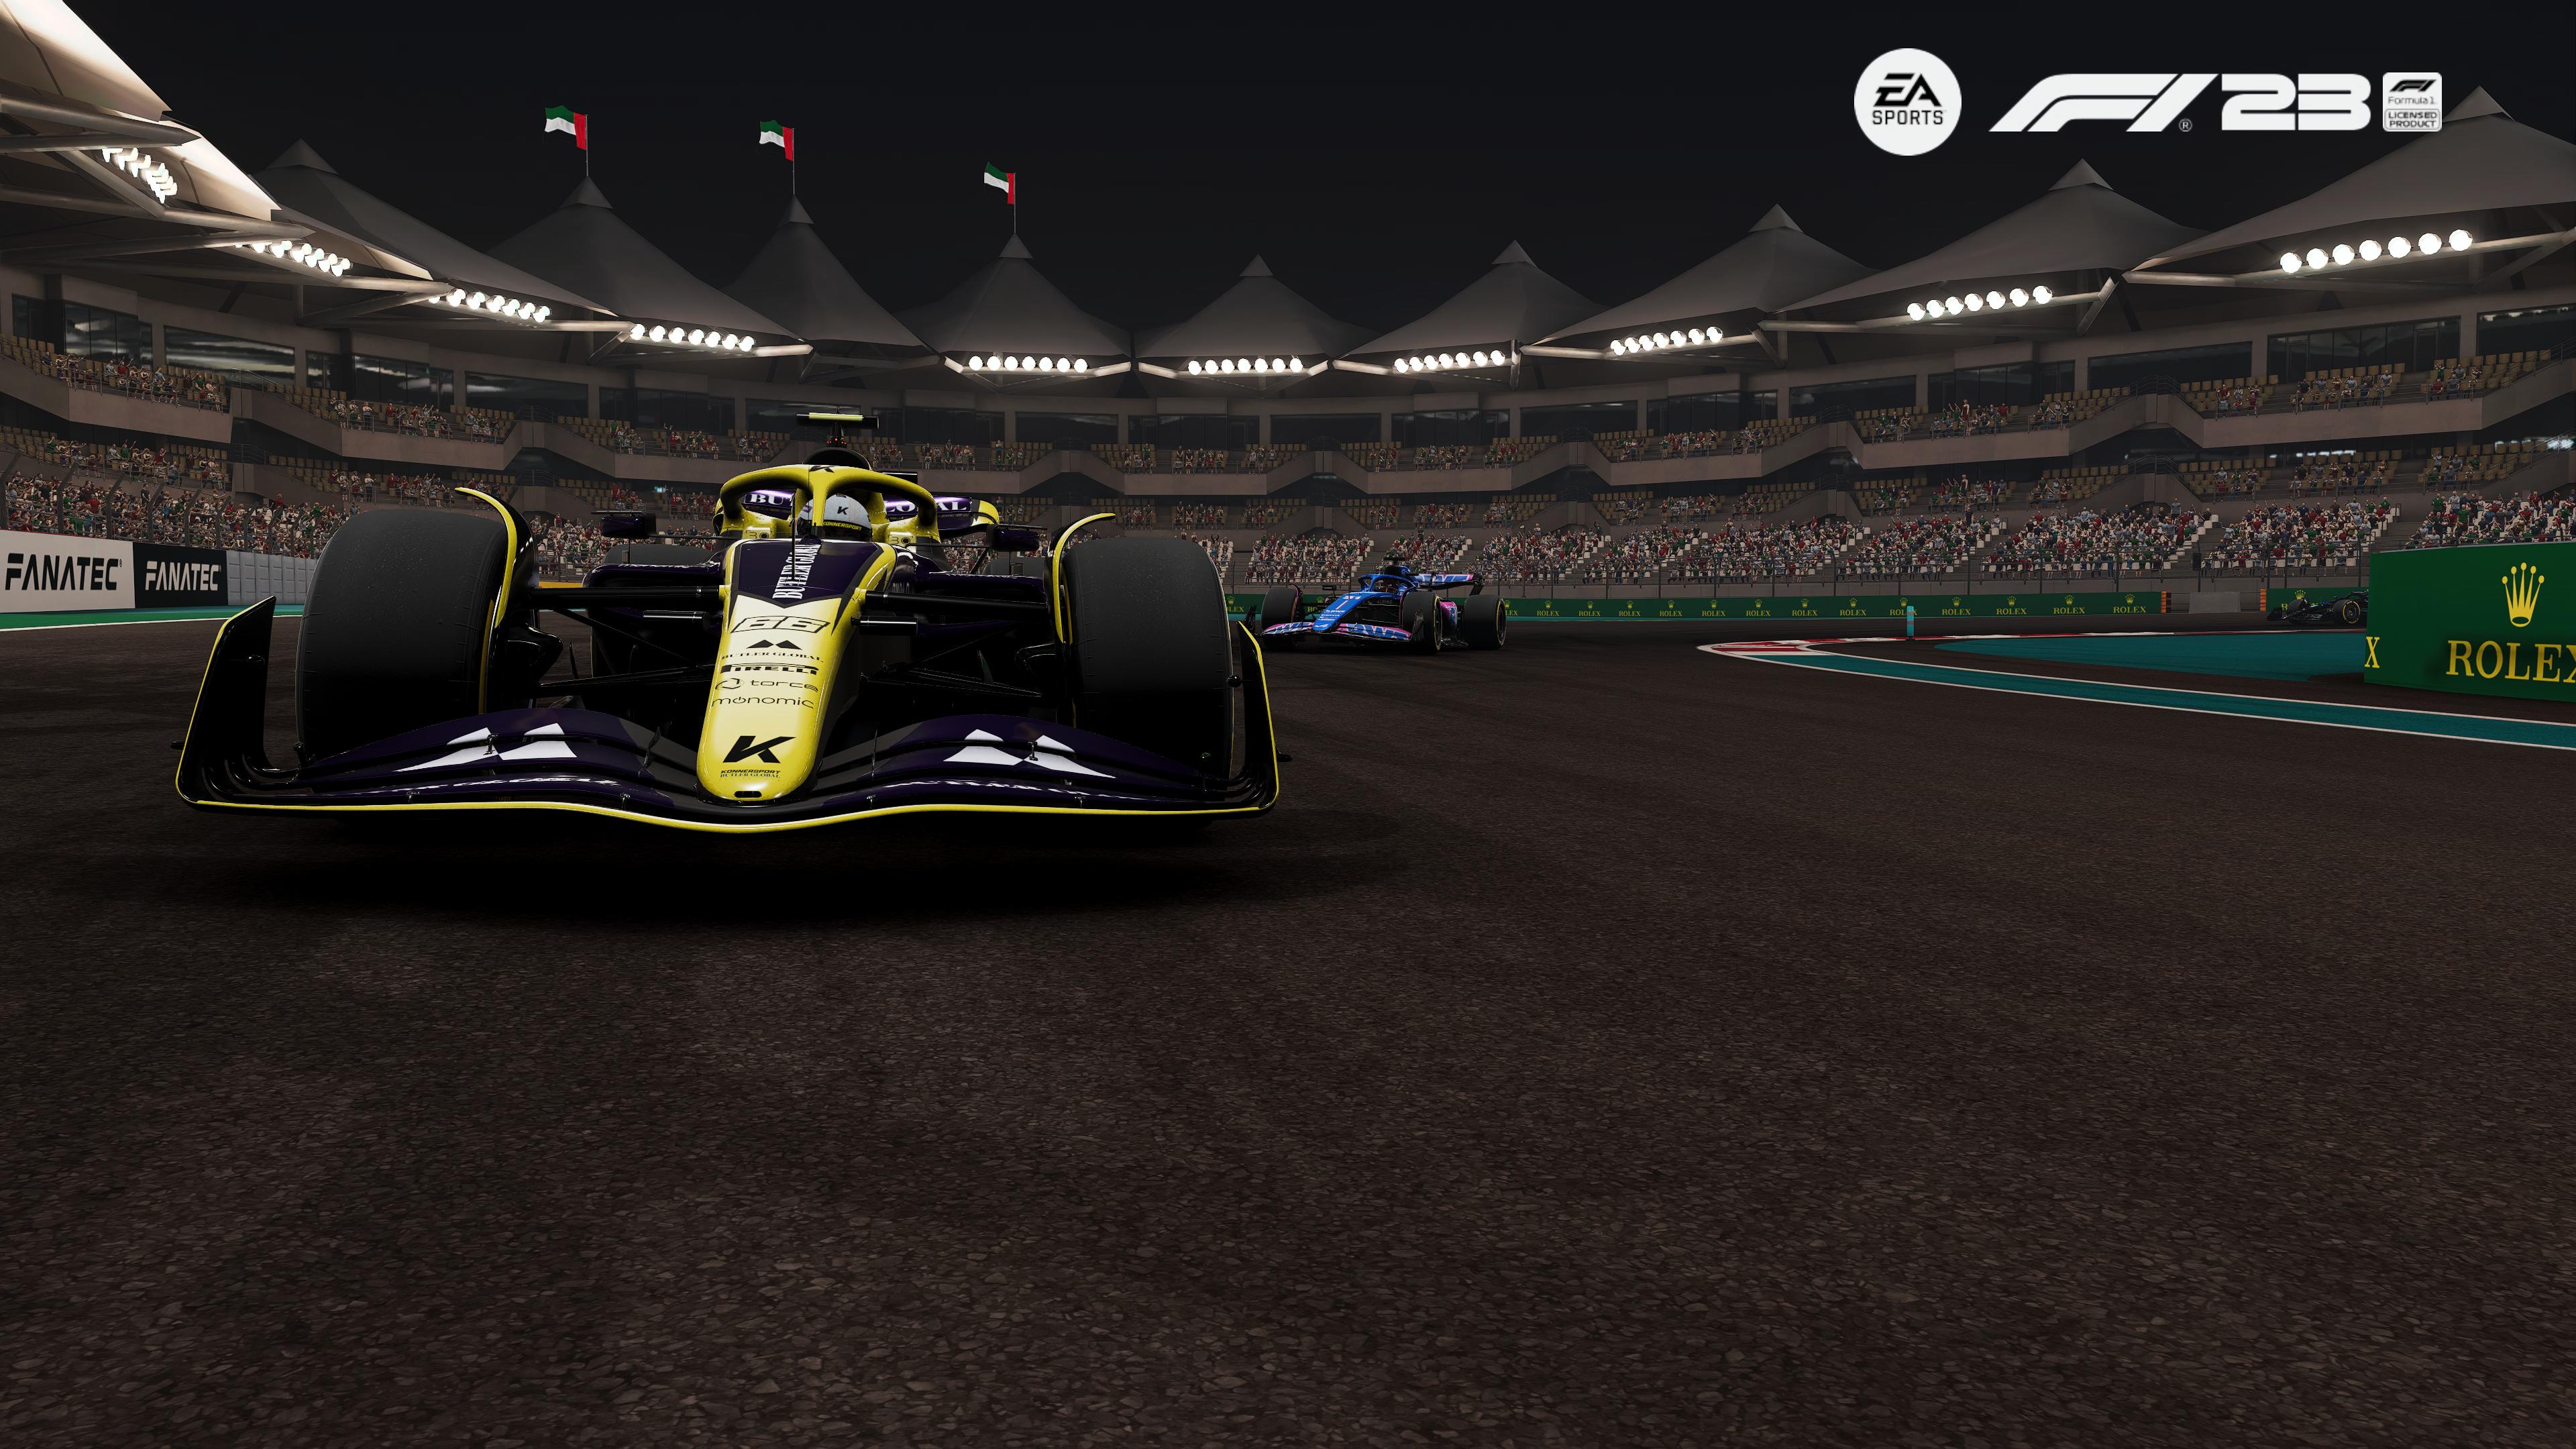 Reseña: EA Sports F1 23, el mejor juego de Fórmula 1 que han hecho 20